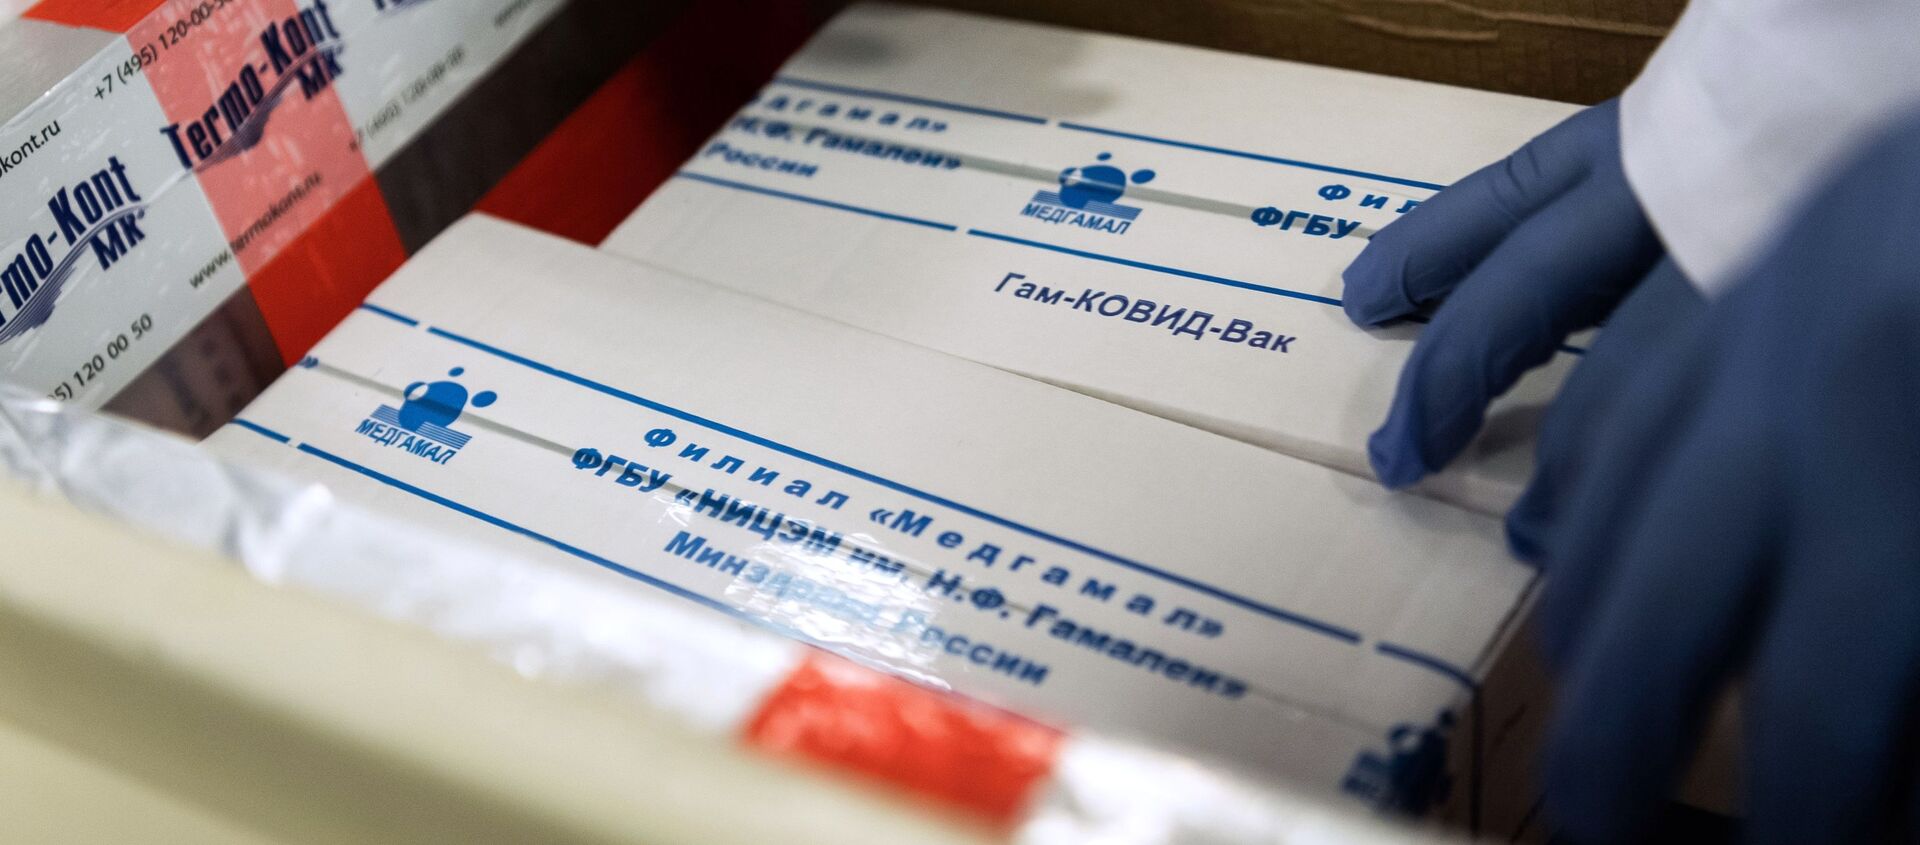 تسليم لقاح سبوتنيك V ضد فيروس كورونا  الروسي إلى المجر لإجراء التجارب السريرية 19 نوفمبر 2020 - سبوتنيك عربي, 1920, 13.02.2021